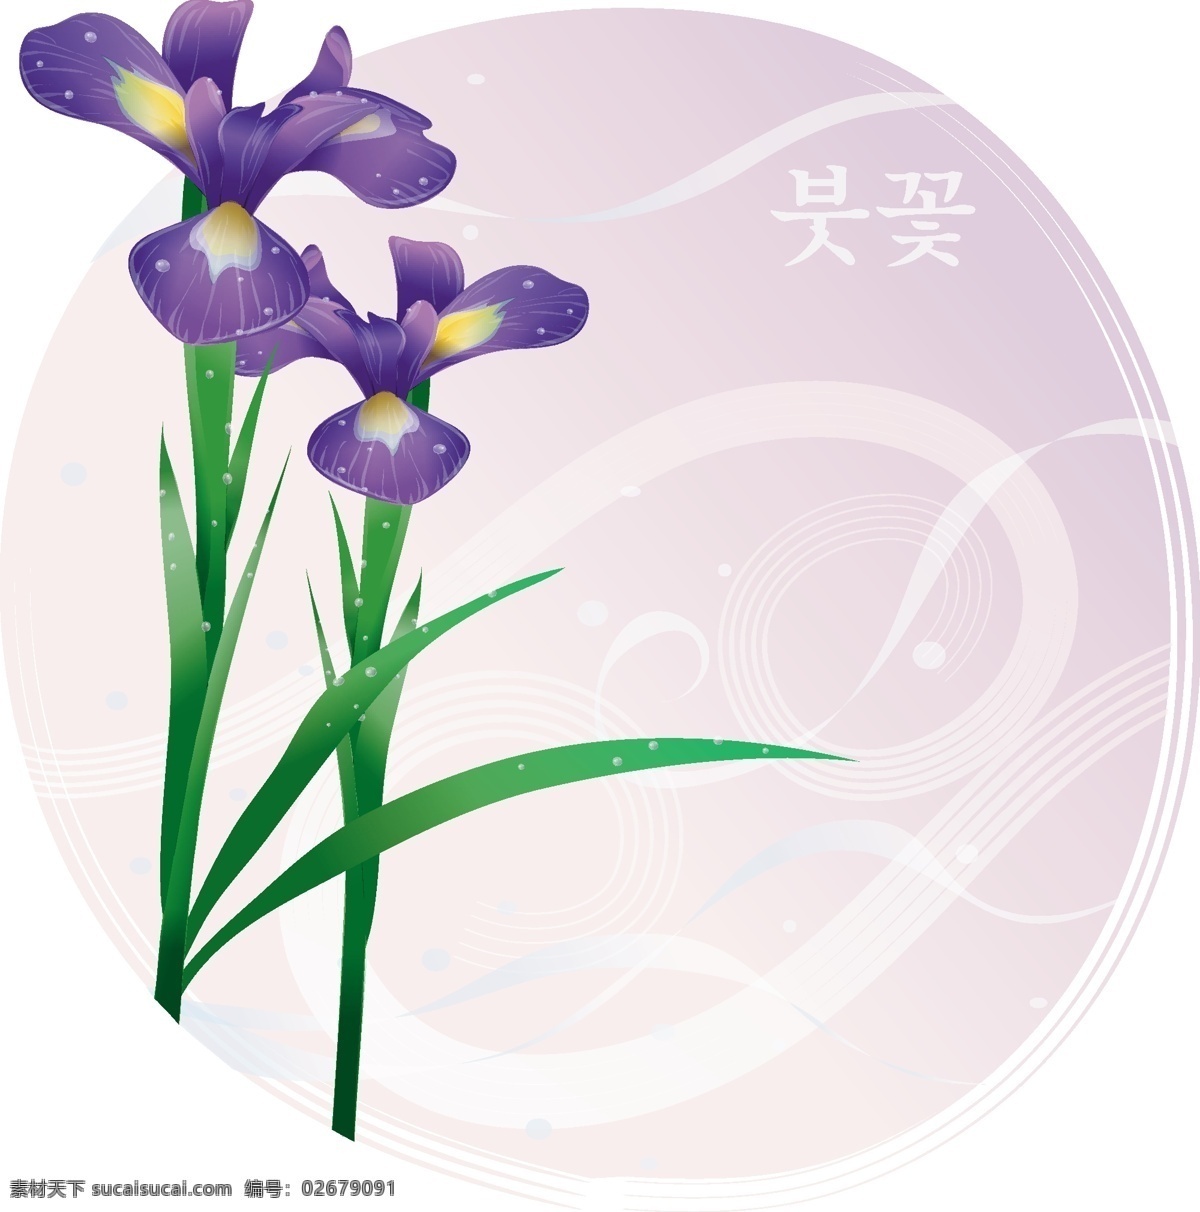 向量 亮 叶 鸢尾 花朵 紫色花朵 韓國插圖 向量植物 矢量图 花纹花边